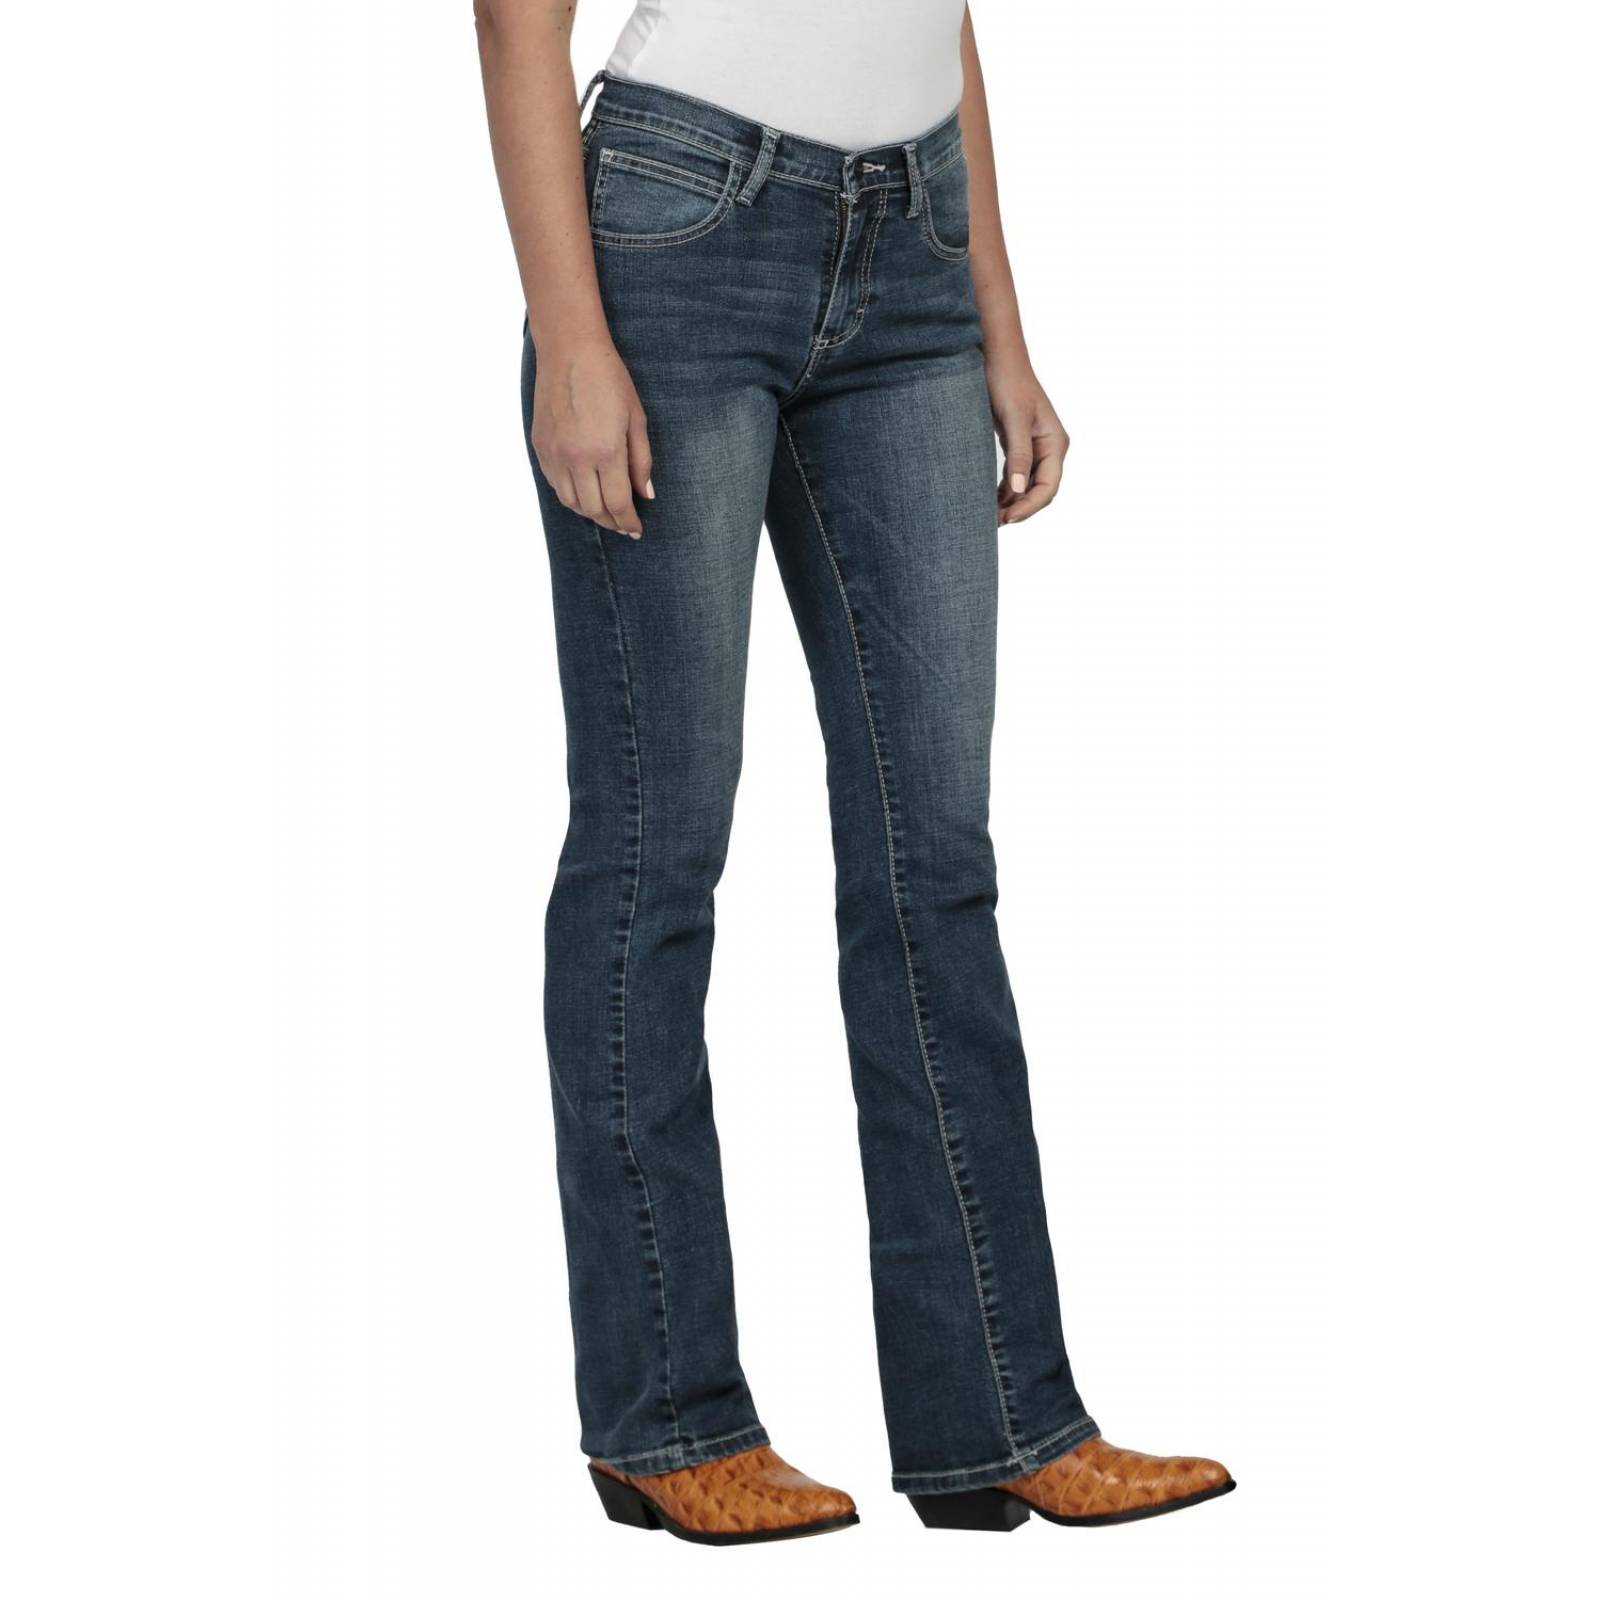 Pantalon Jeans Vaquero Wrangler Mujer Cintura Alta Ro42